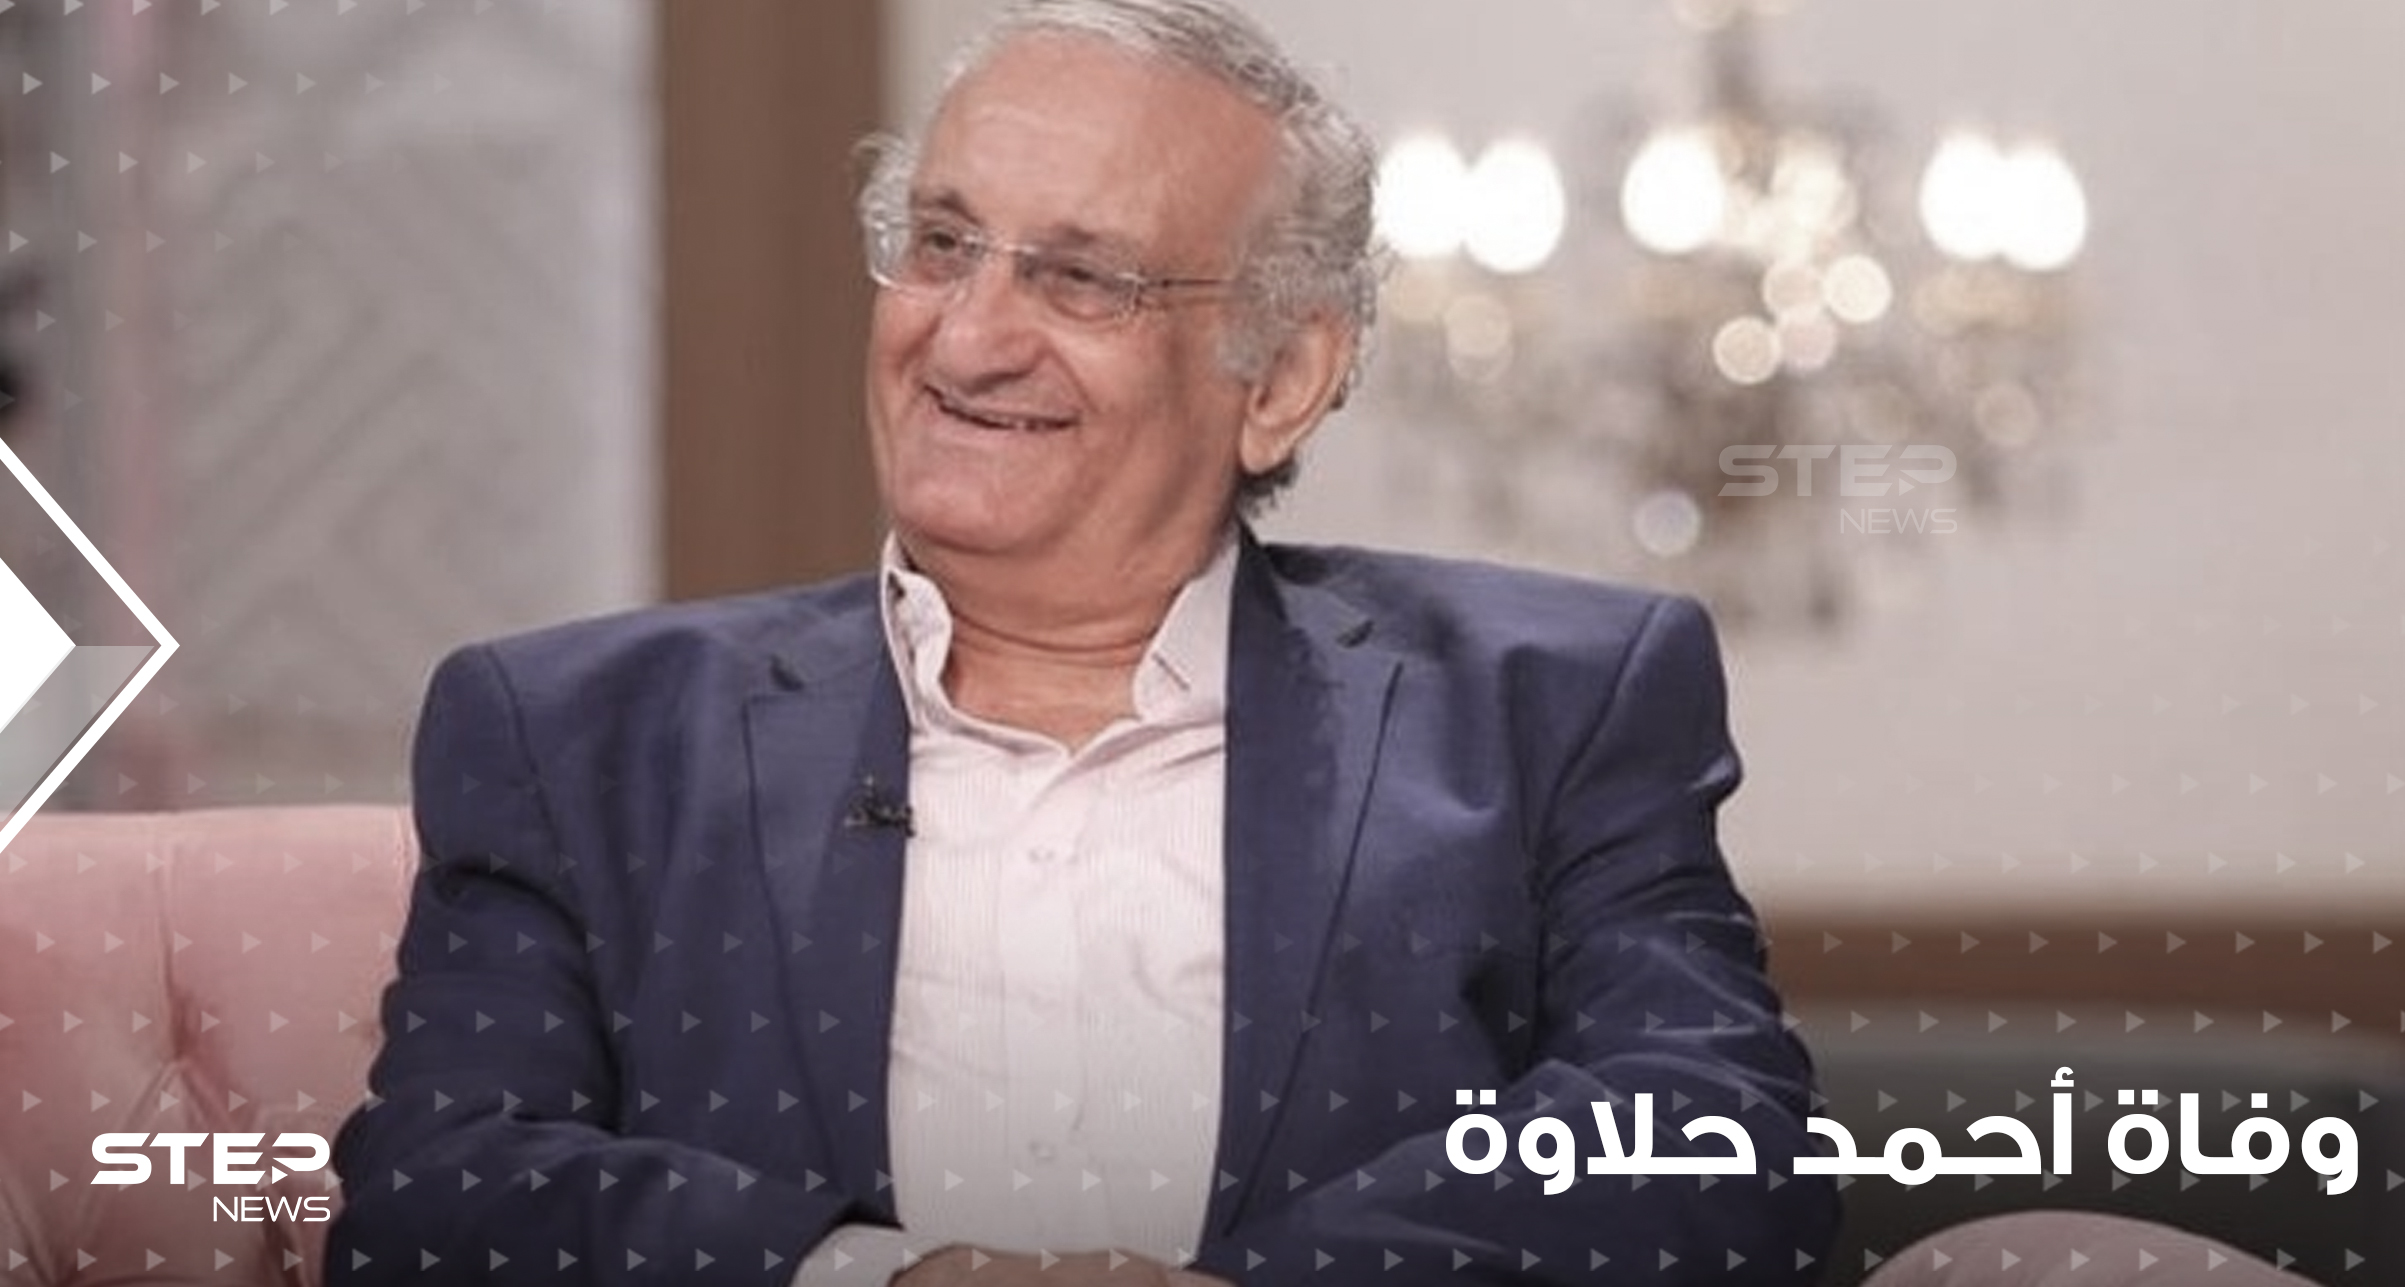 أحمد حلاوة يرحل قبل أن يشاهد آخر أعماله الفنية.. ما هو سبب وفاة الفنان المصري الشهير